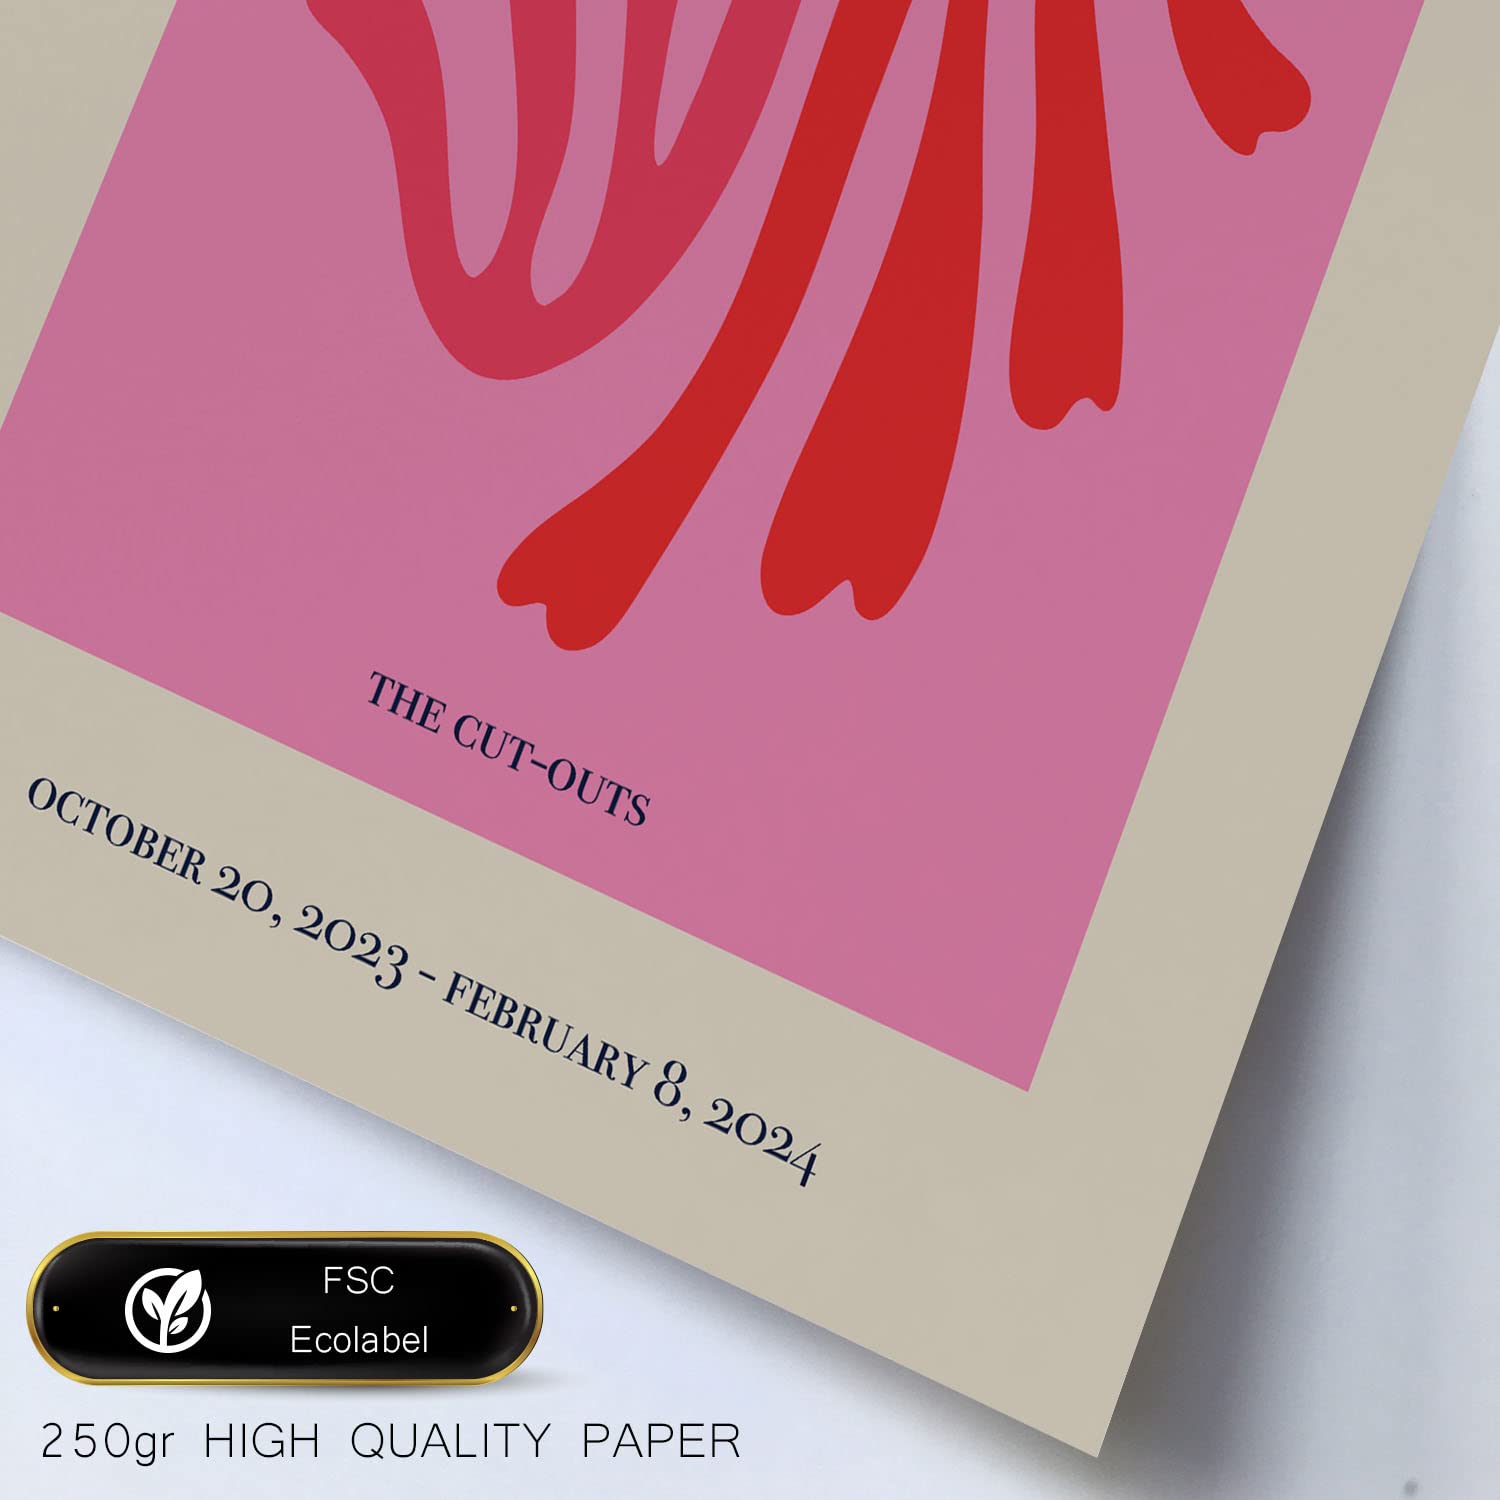 Set de 6 posters Matisse. Colección de láminas con estética collage para la Tamaños A3 y A4. .-Artwork-Nacnic-Nacnic Estudio SL